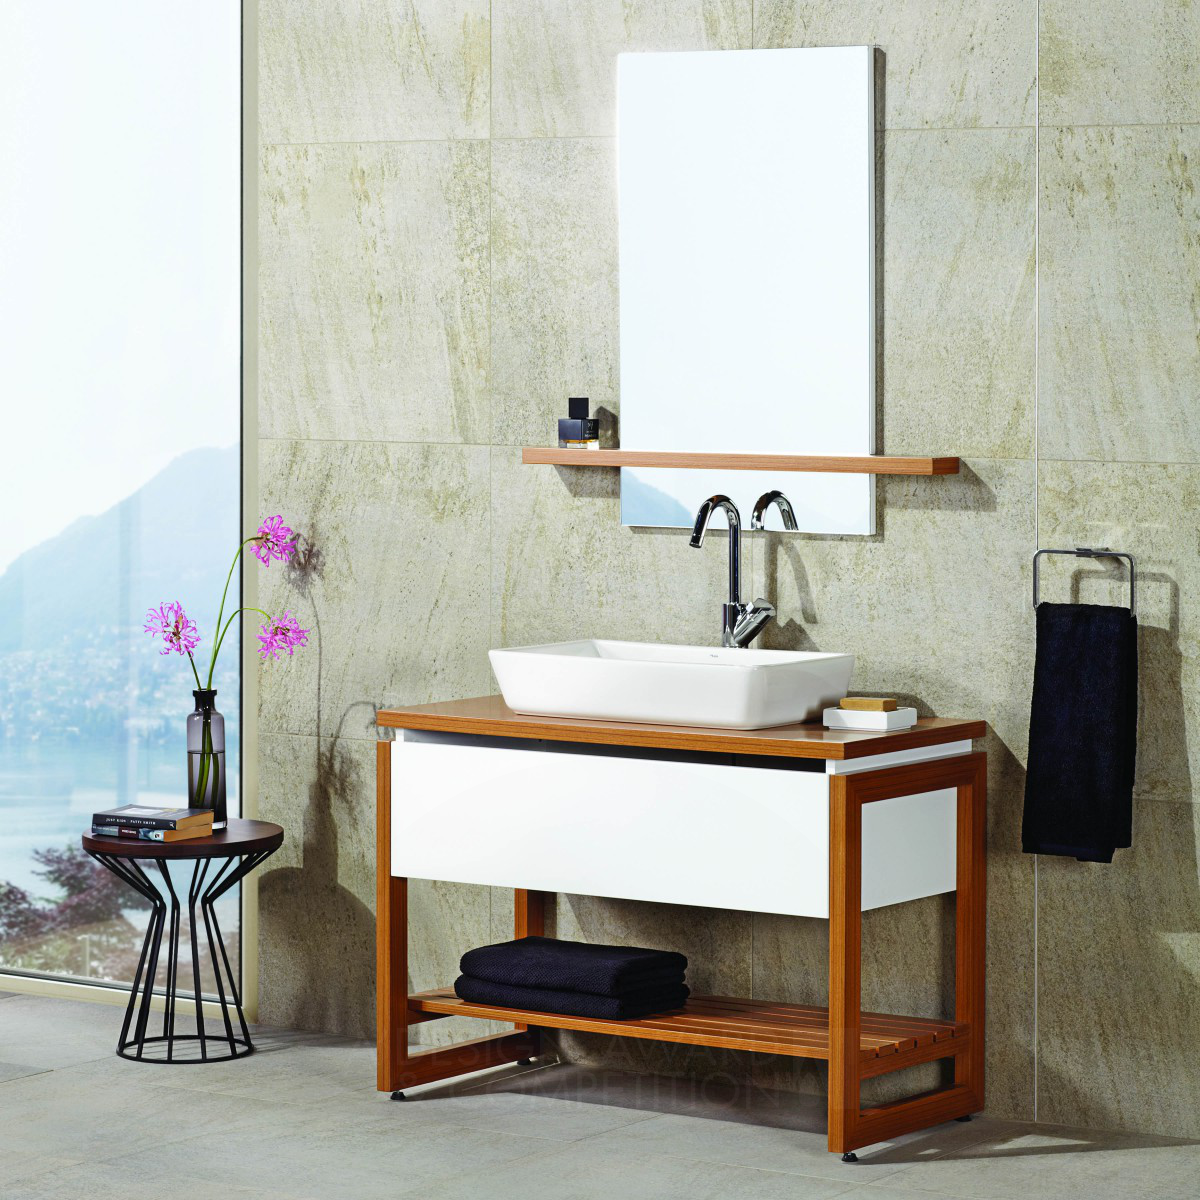 K.i.d (Kale Design & Innovation) Bathroom Furniture Set & Ceramic Tiling